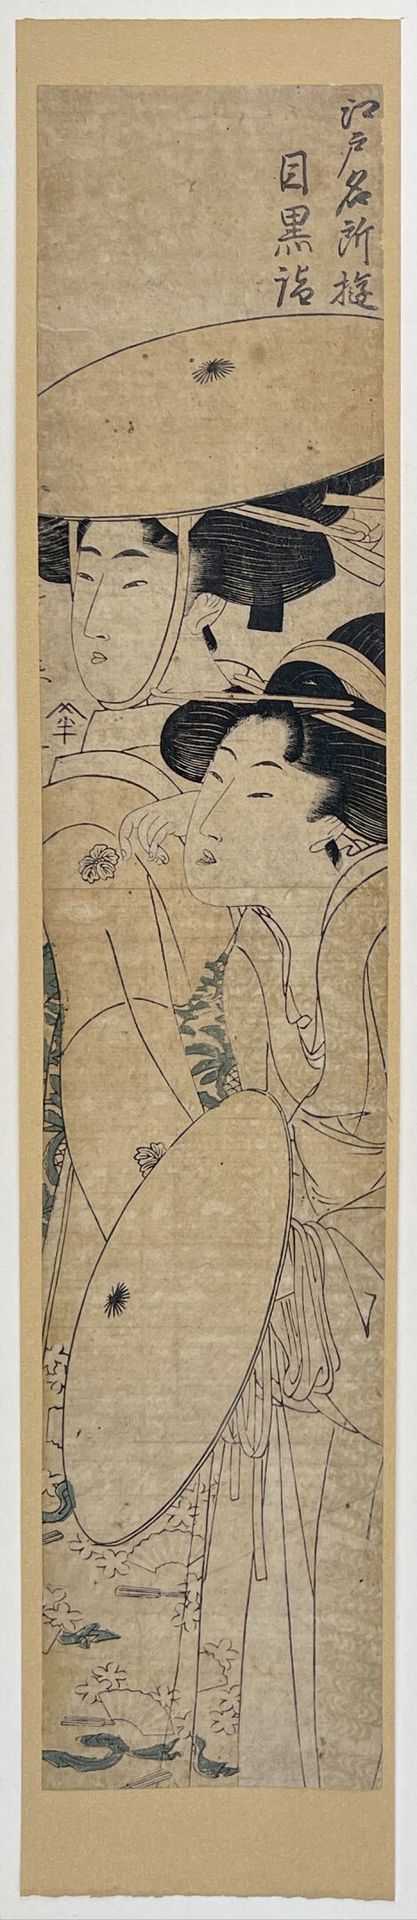 Null Kitagawa Utamaro (1753?-1806)
Hashira-e, from the series Edo meisho asobi, &hellip;